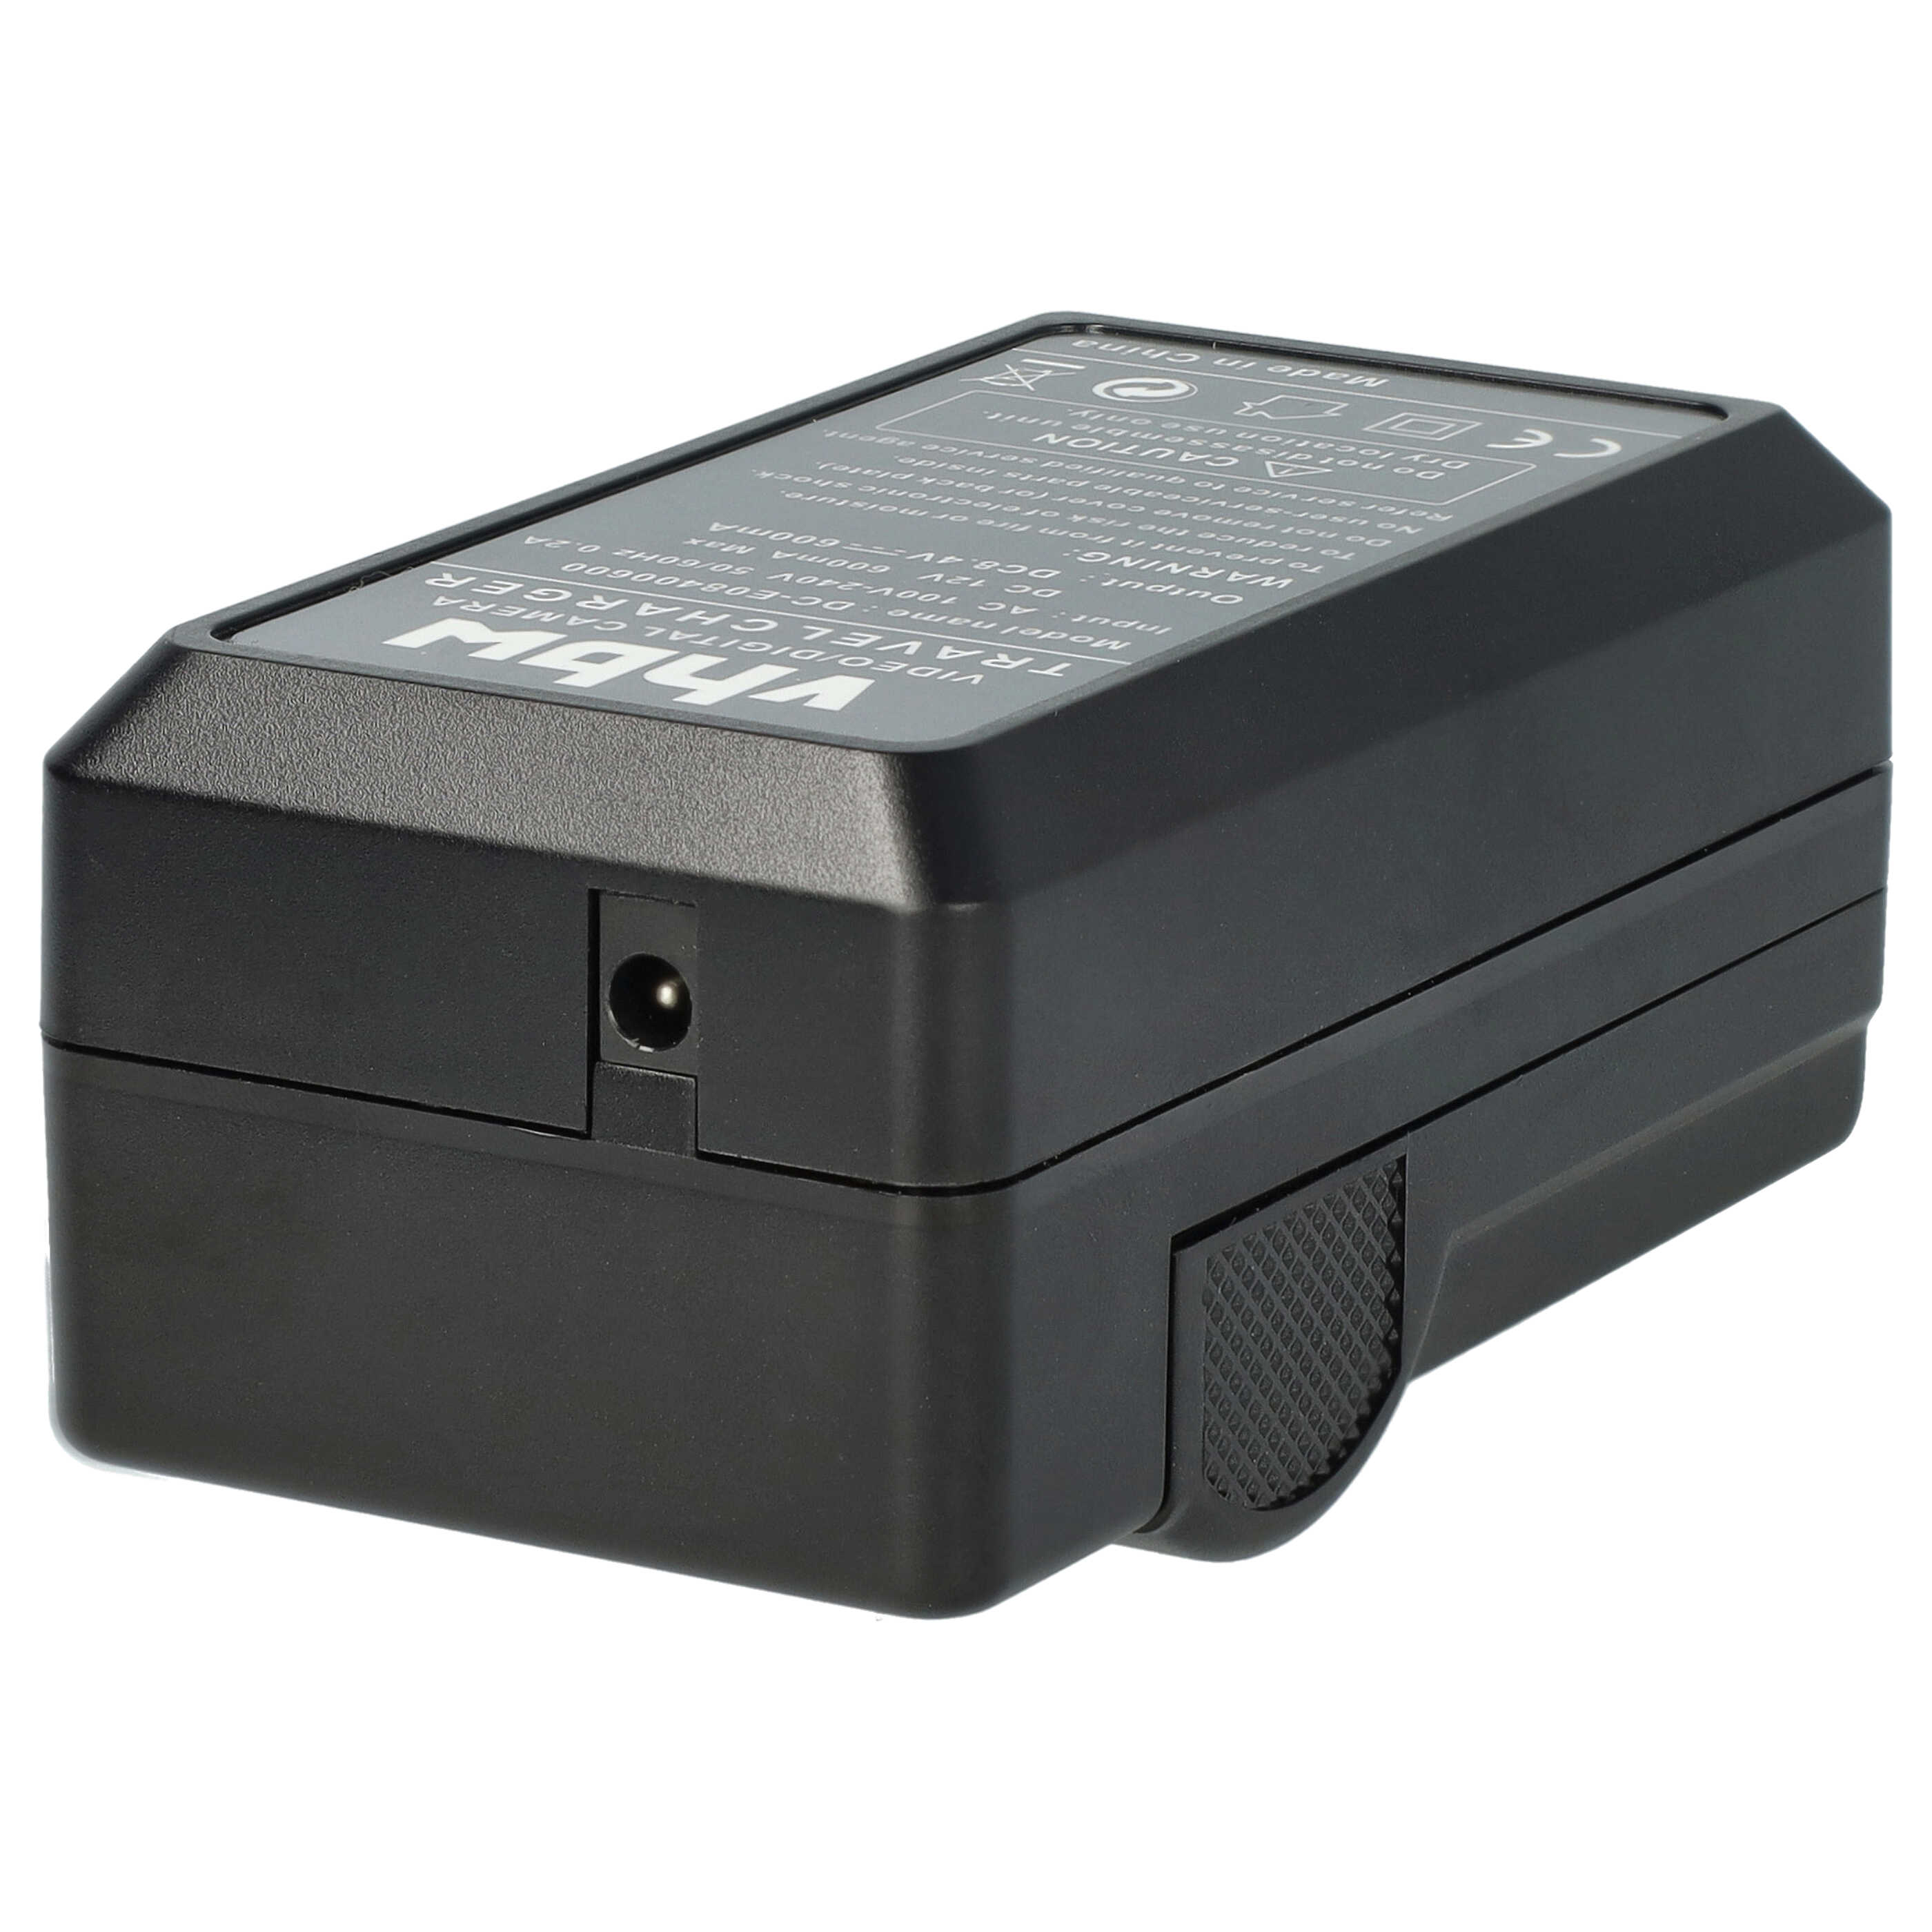 Cargador + adaptador de coche para cámara - 0,6A 8,4V 88,5cm